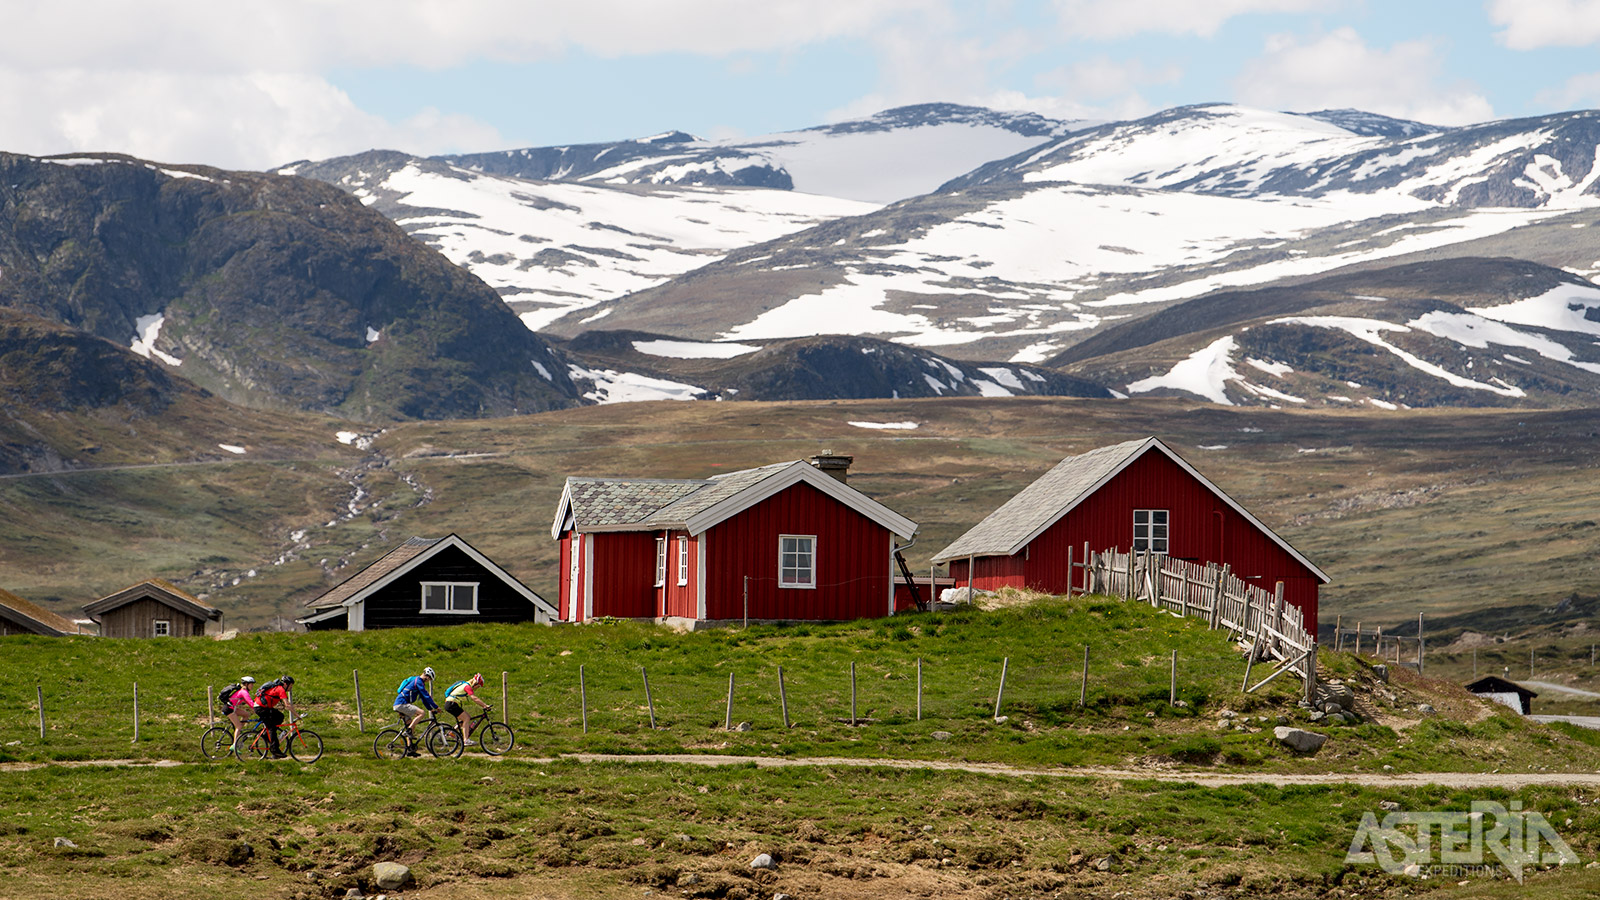 Ontdek de pracht van een van de mooiste regio’s in Zuid-Noorwegen met de fiets